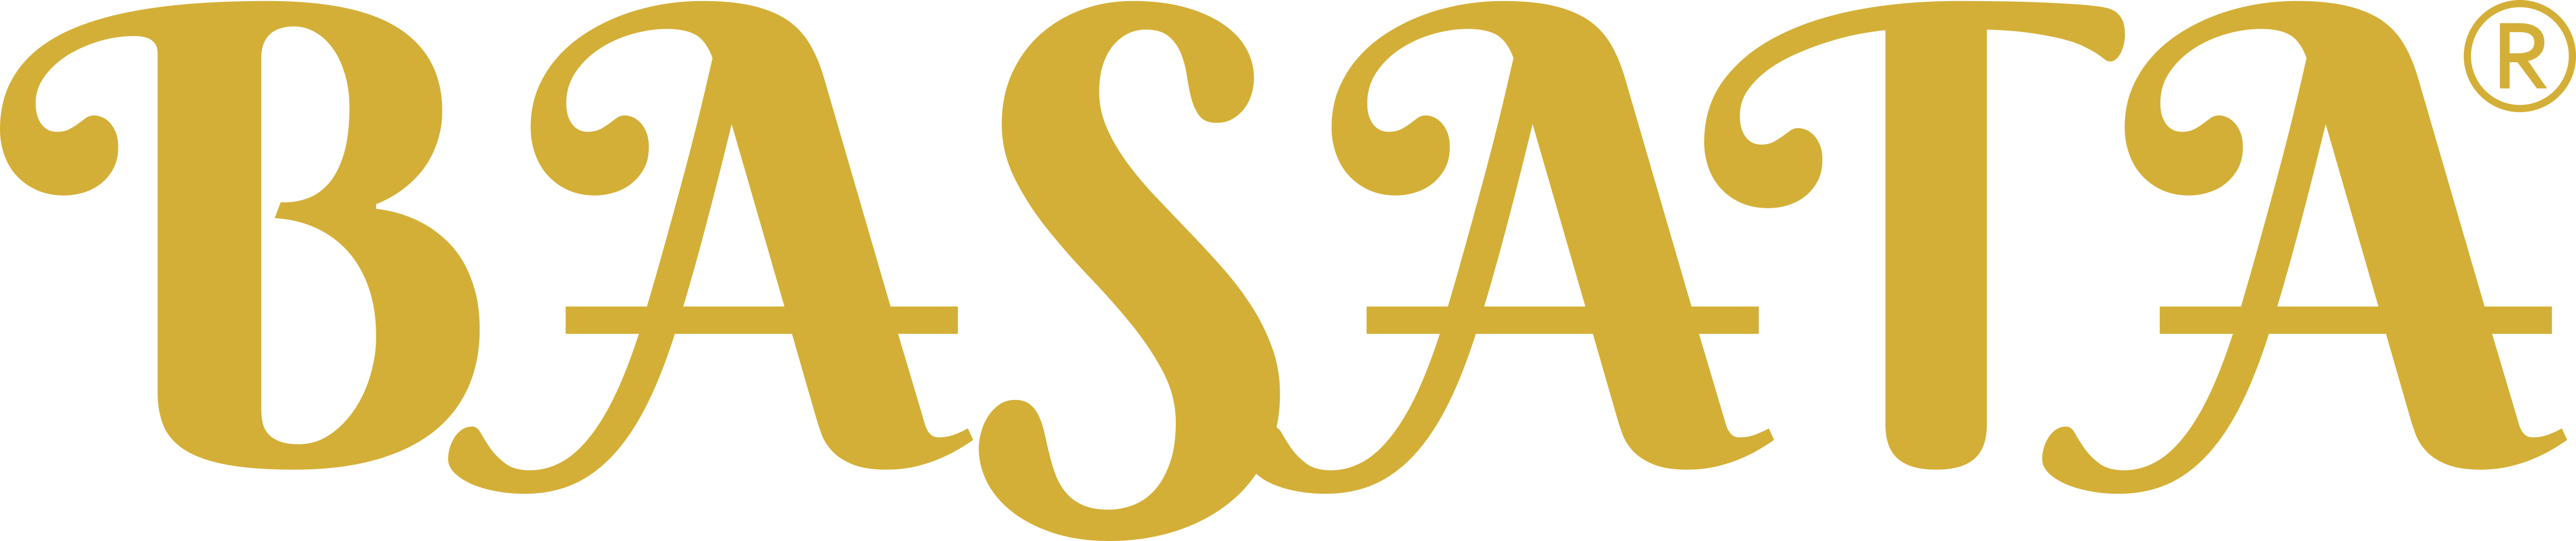 Basata Logo For Website